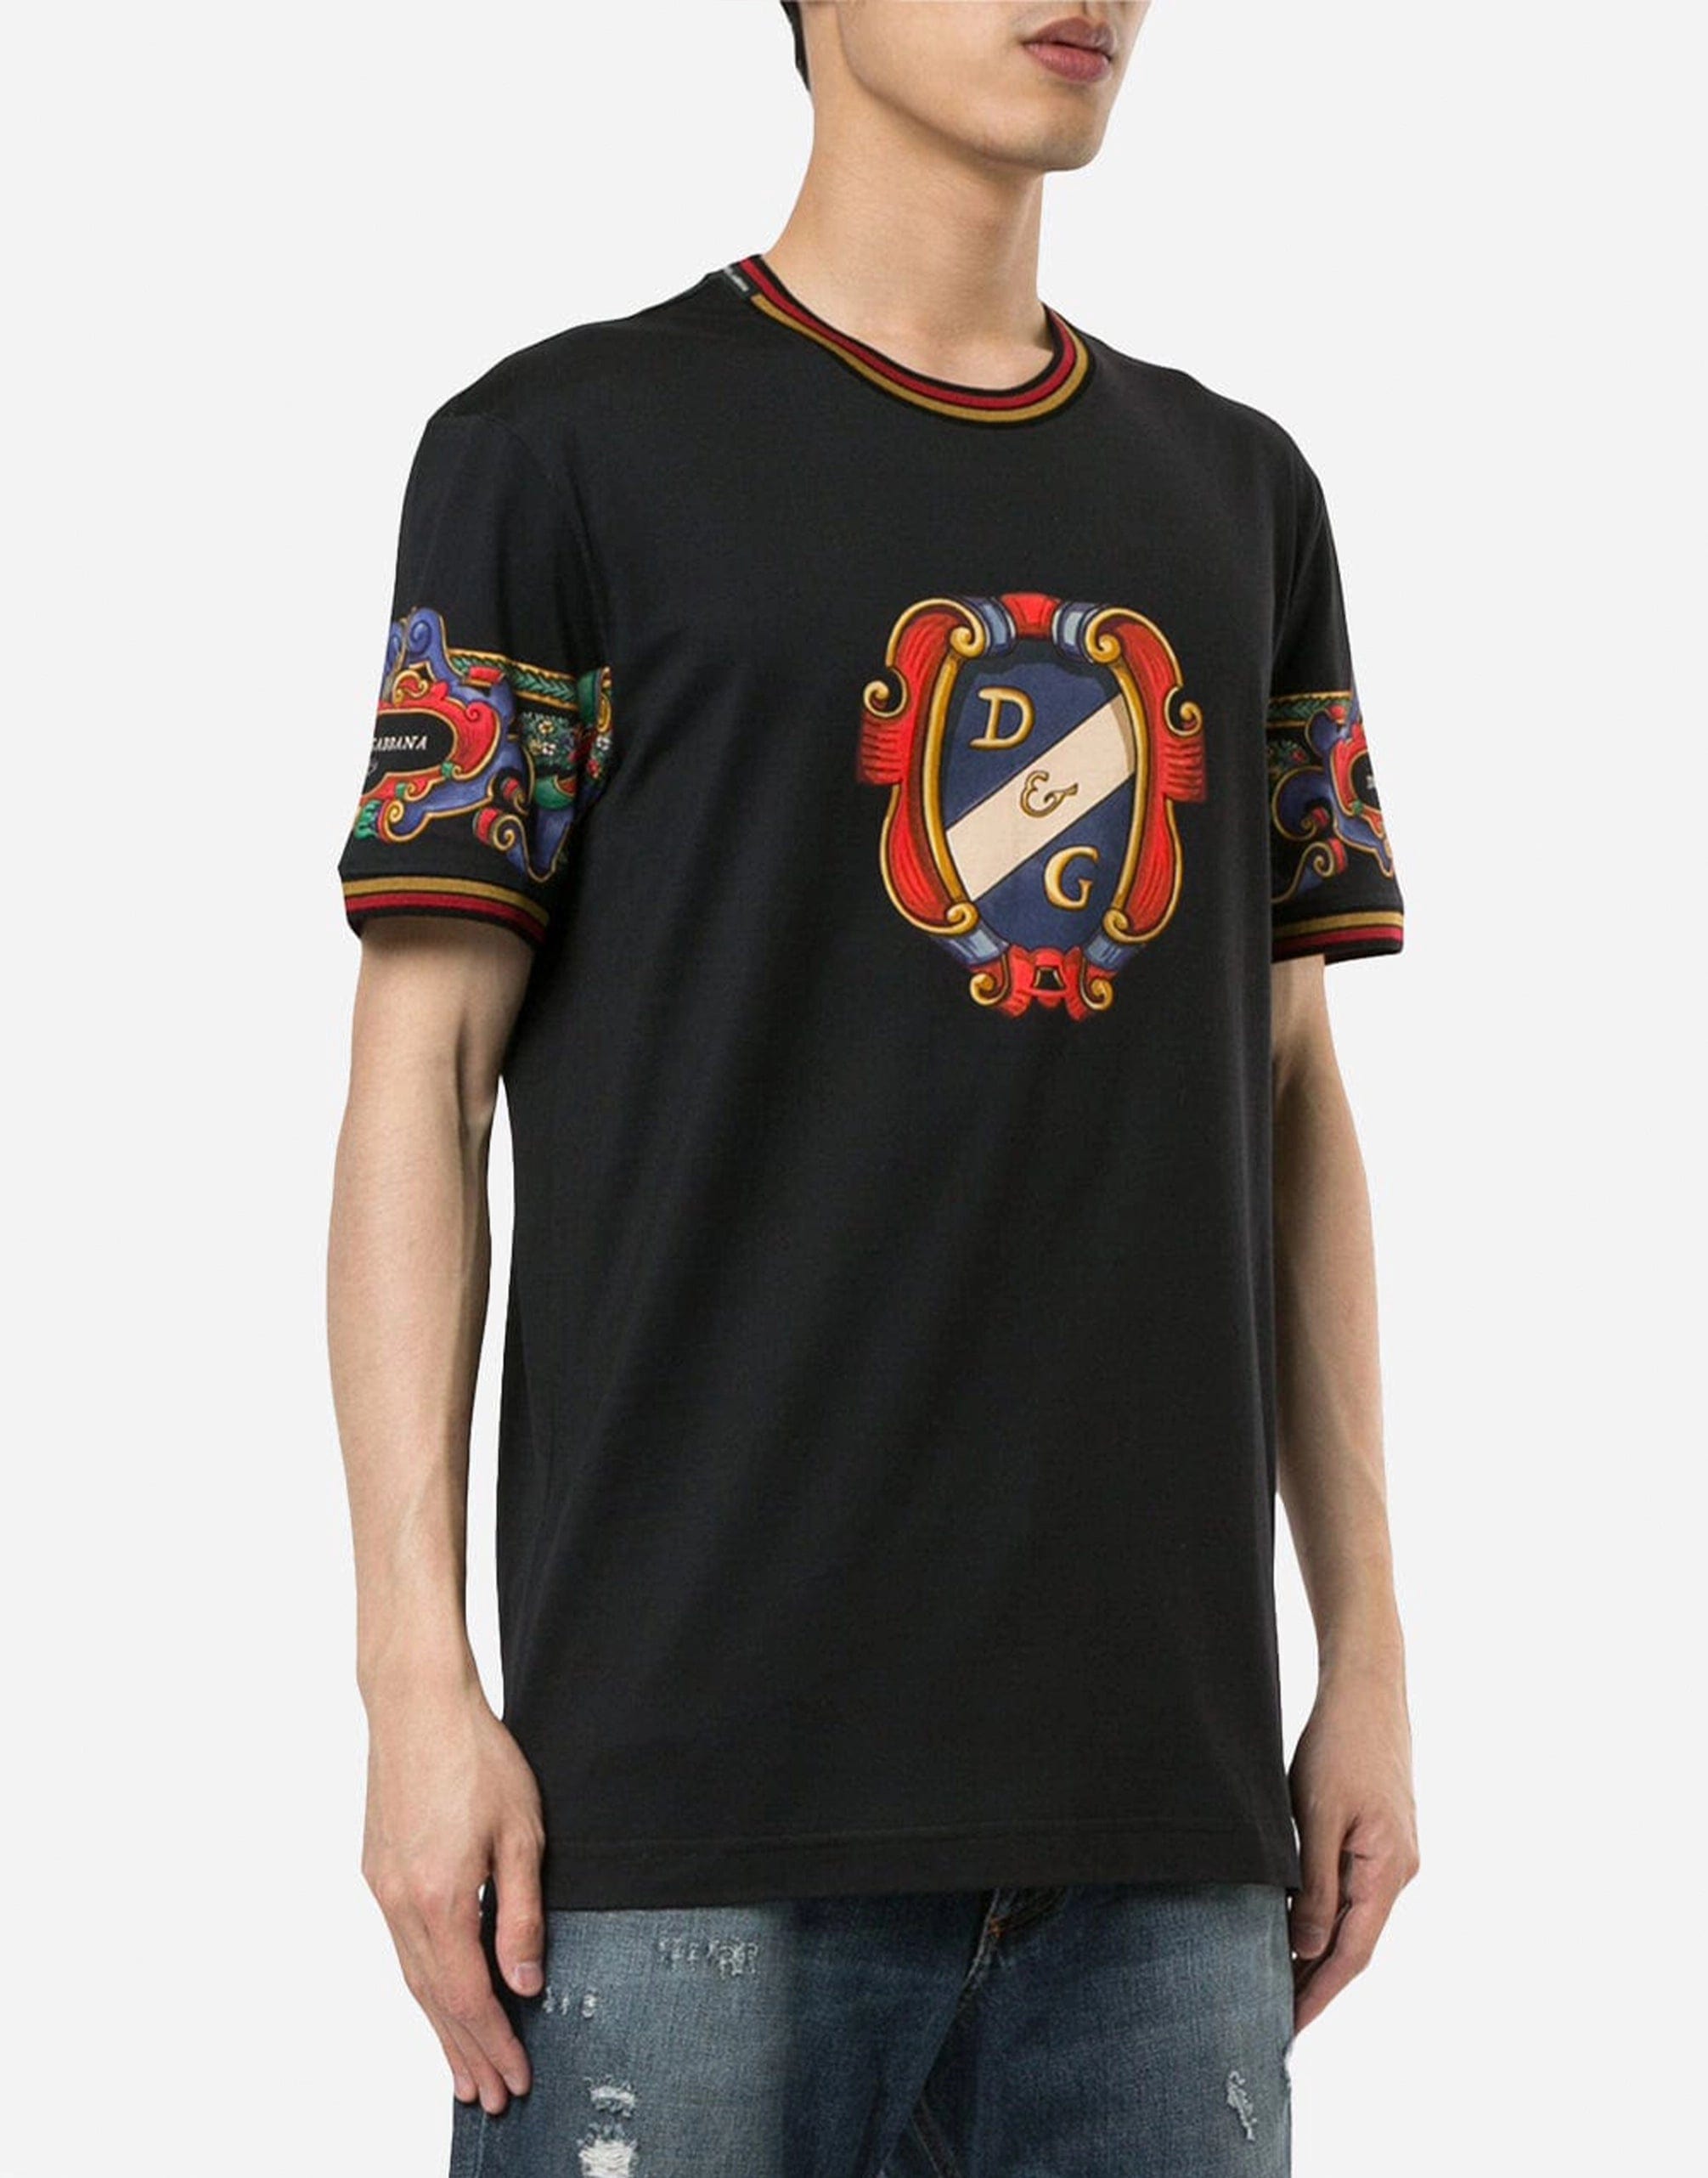 Heraldic Printed Cotton T-Shirt